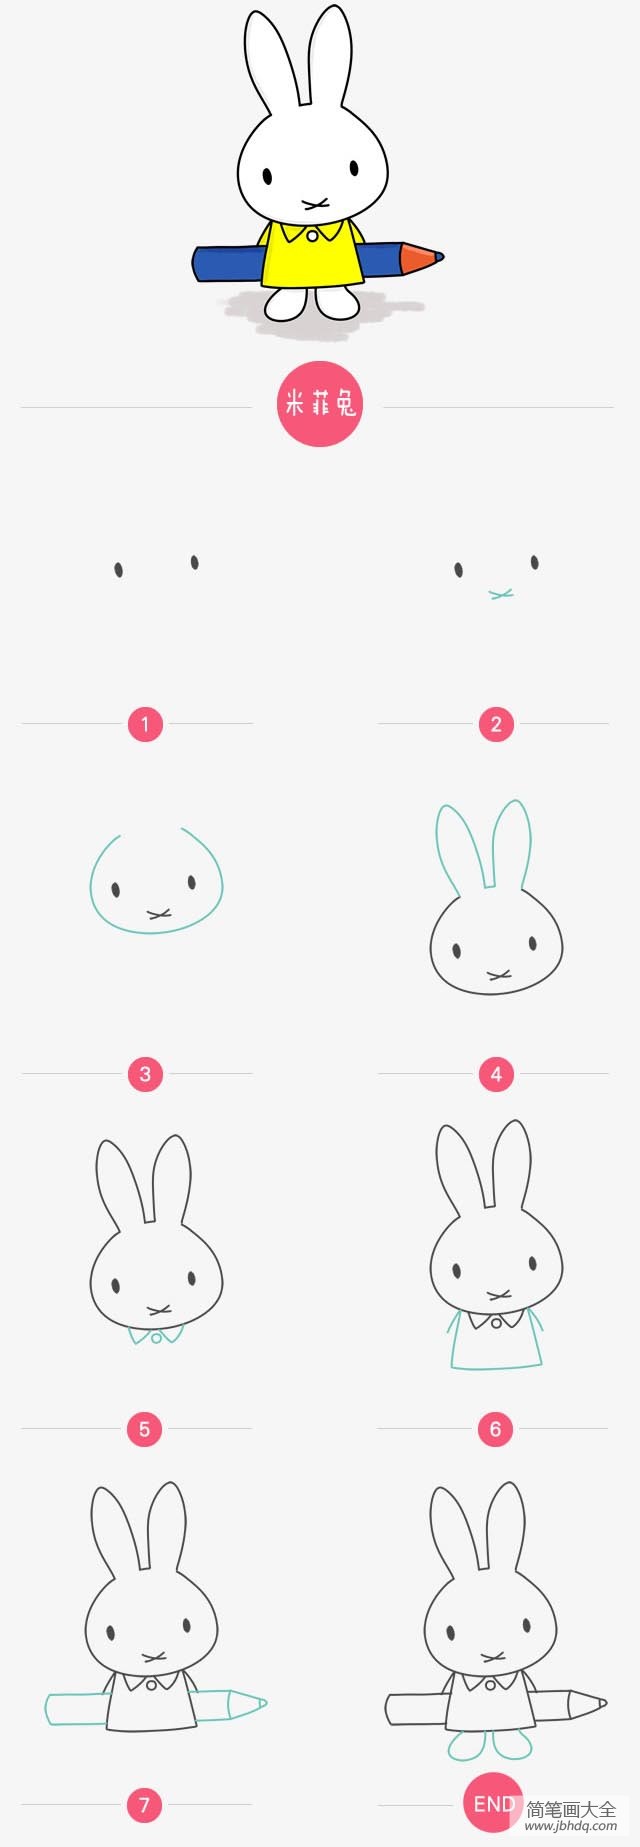 动漫人物米菲兔简笔画教程